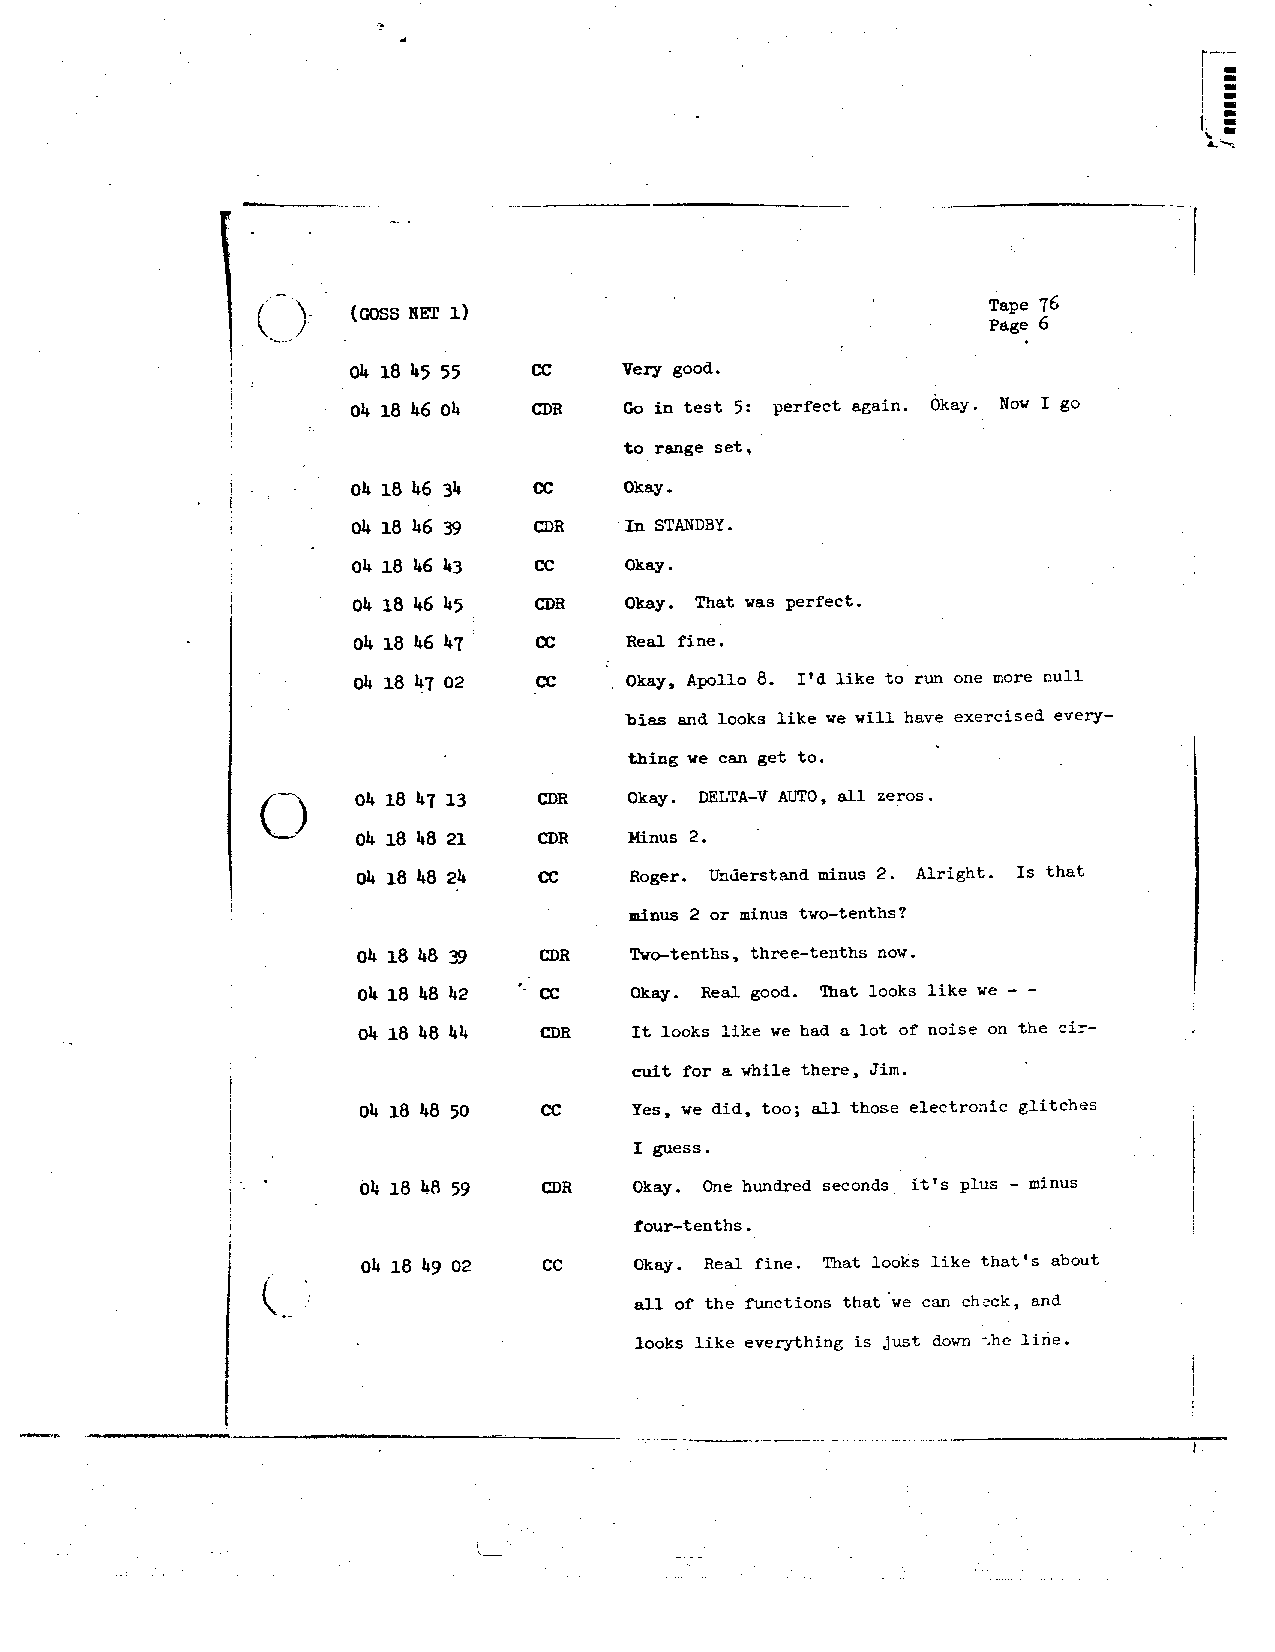 Page 614 of Apollo 8’s original transcript